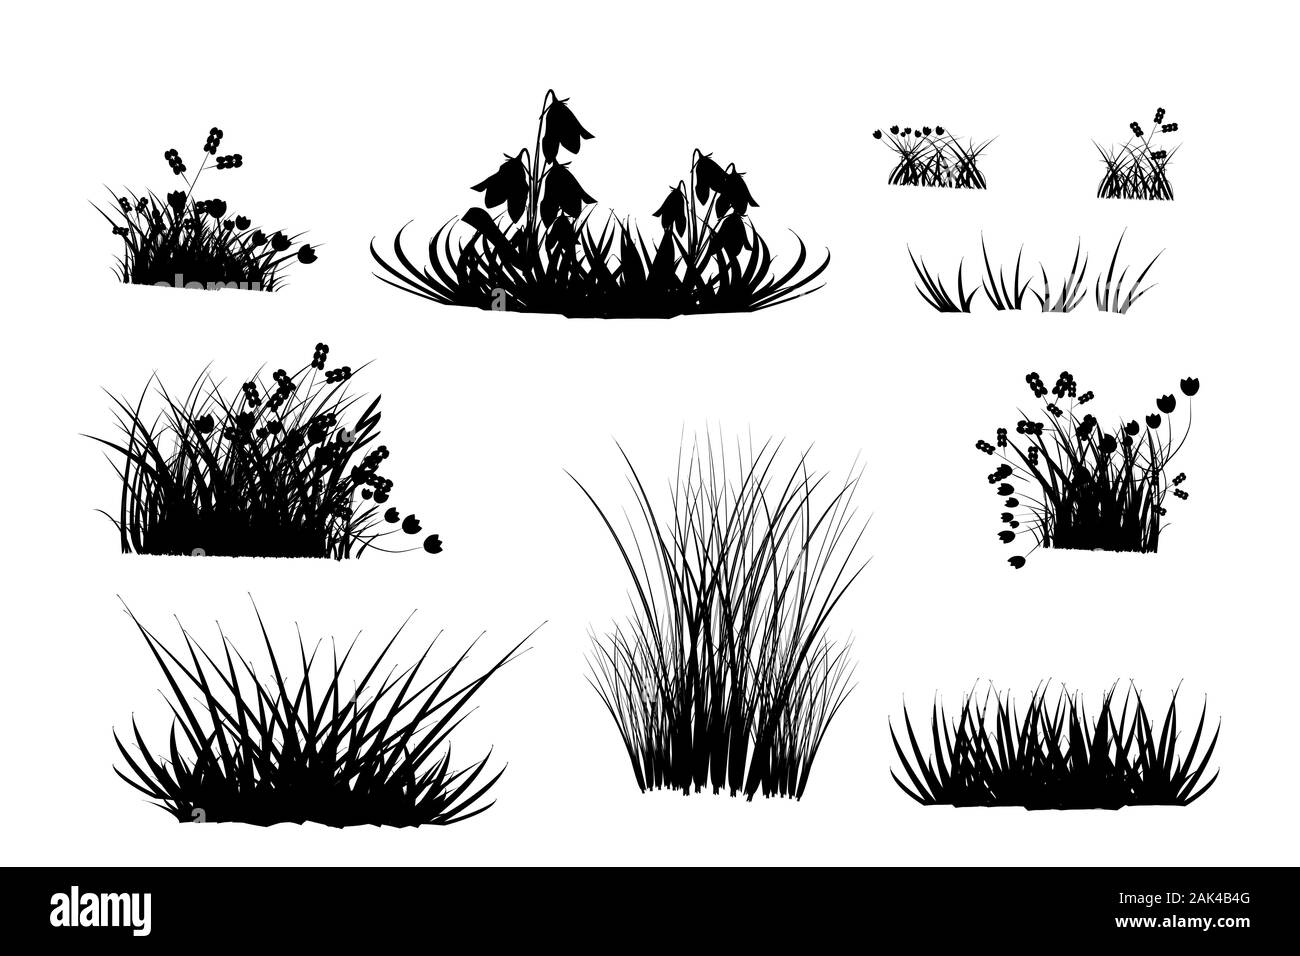 Satz von Schwarz gras Silhouetten auf weißem Hintergrund. Sammlung von wiese gras und Kräuter Silhouetten. schwarze Haarbüschel Formen von Gras. Vektor Stock Vektor